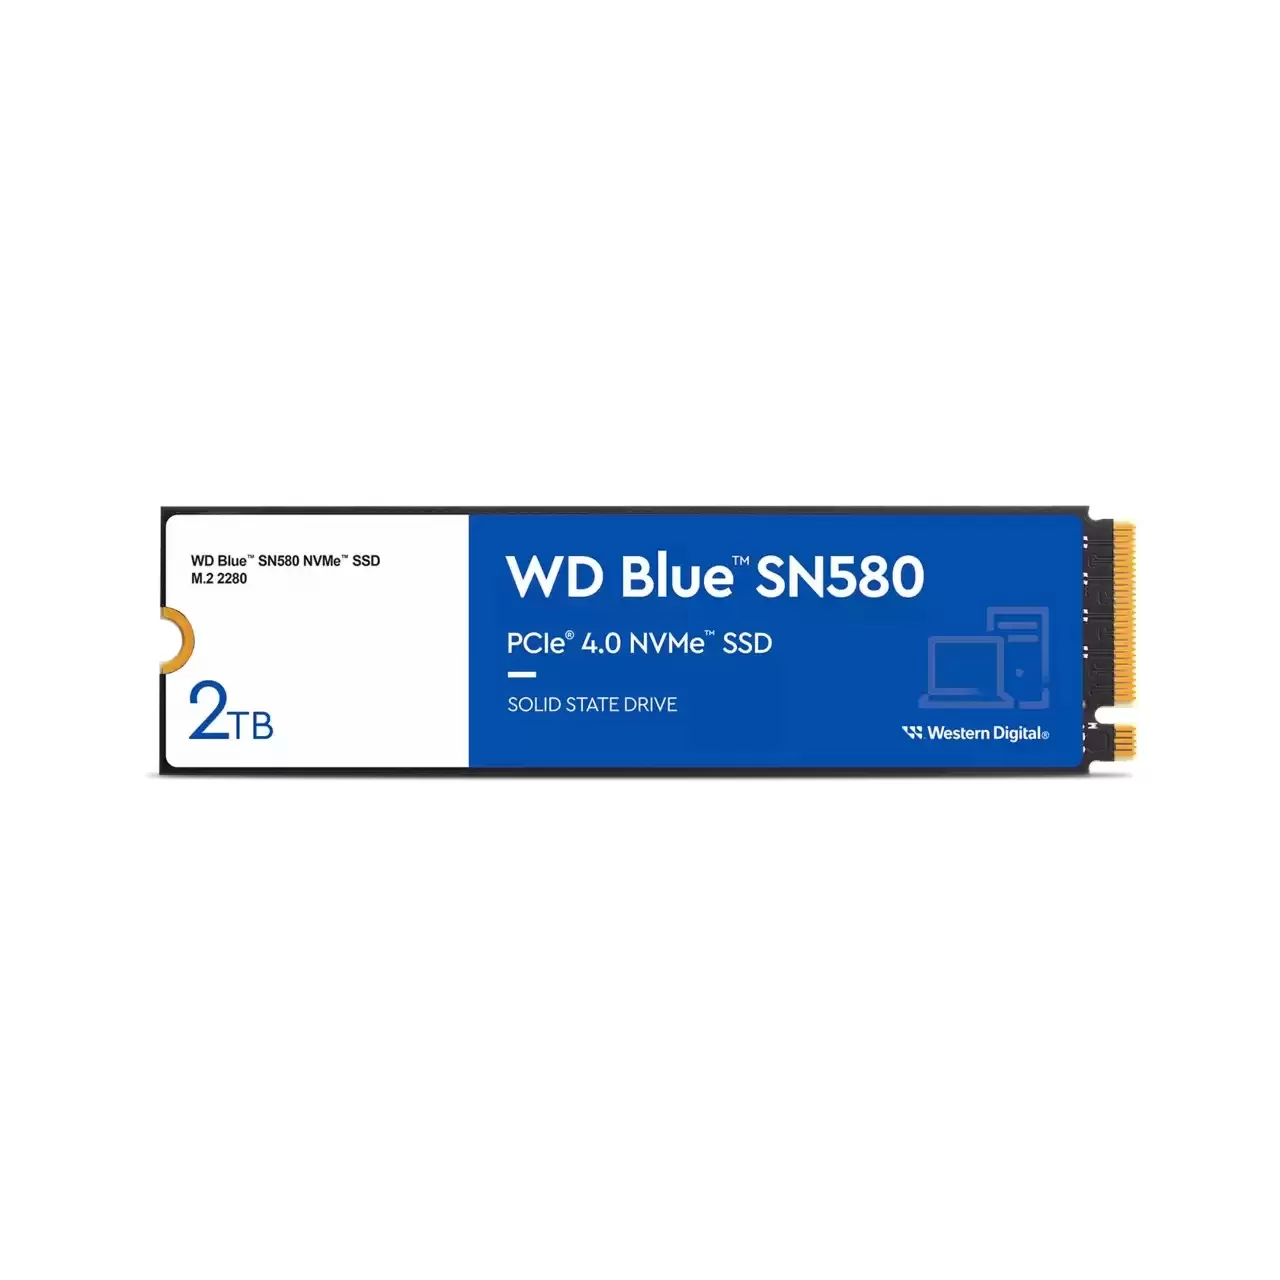 Hard disk ssd western digital wd blue sn580 2tb m.2 2280